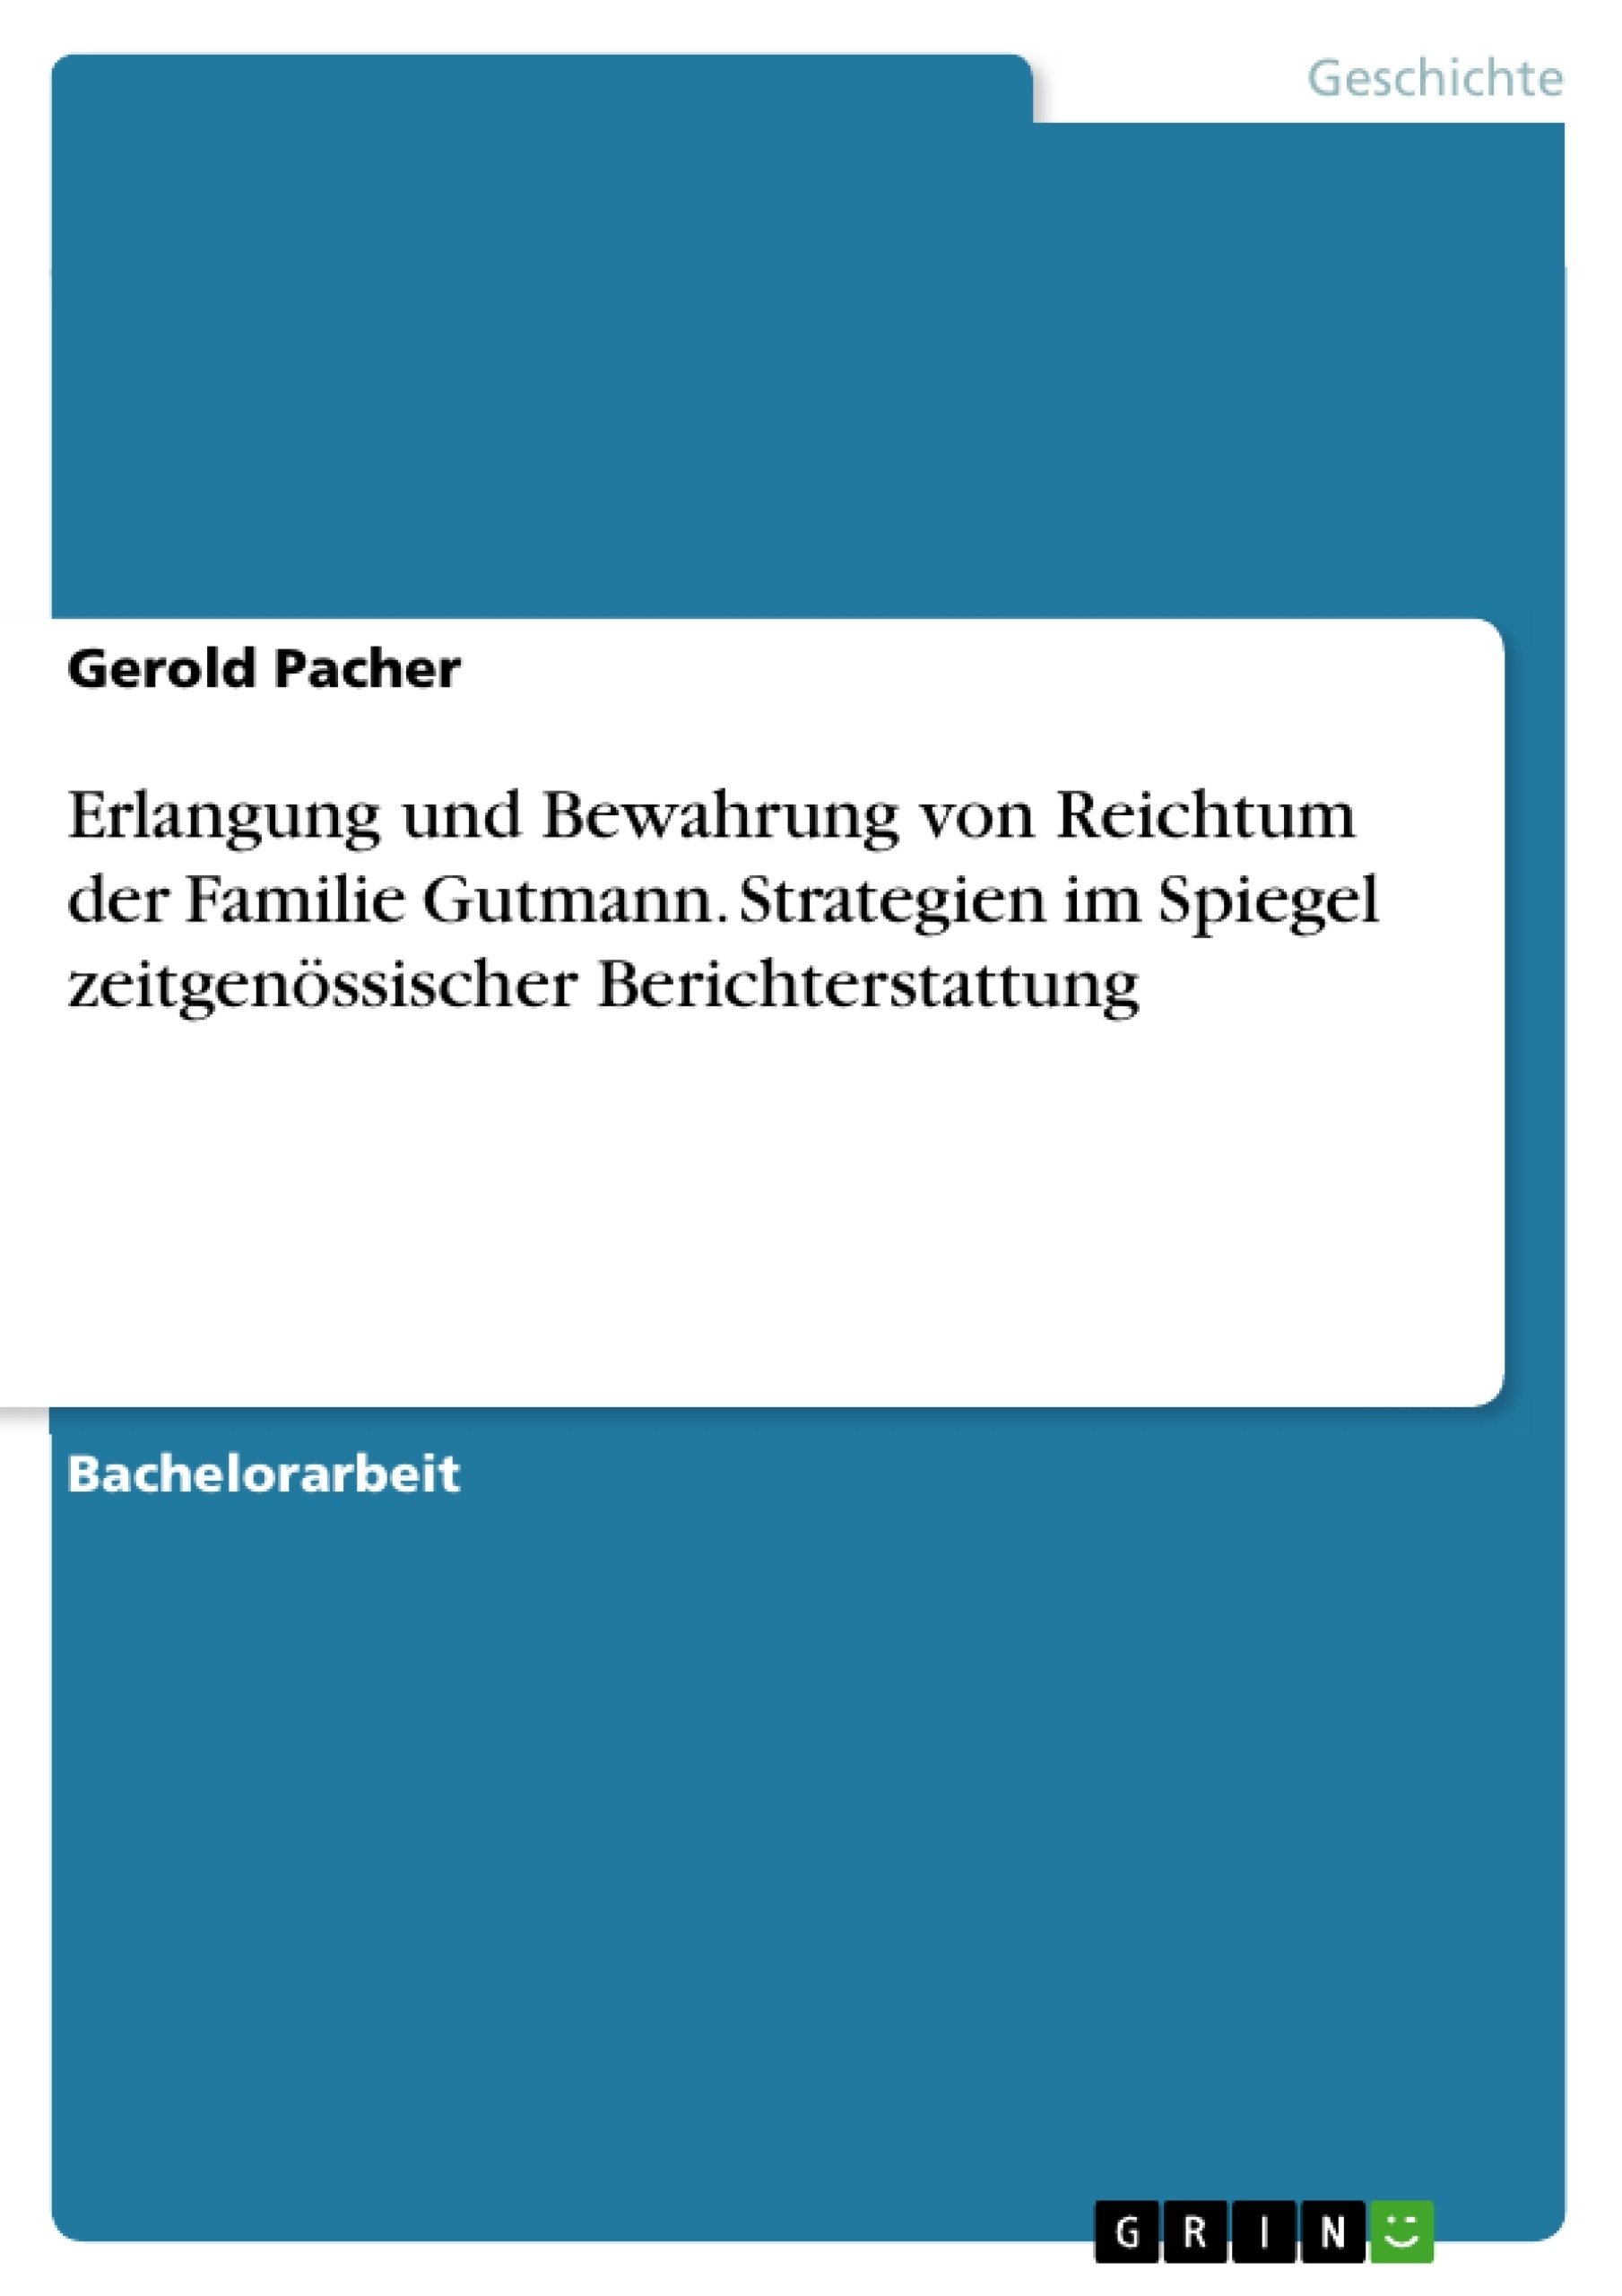 Title: Erlangung und Bewahrung von Reichtum der Familie Gutmann. Strategien im Spiegel zeitgenössischer Berichterstattung